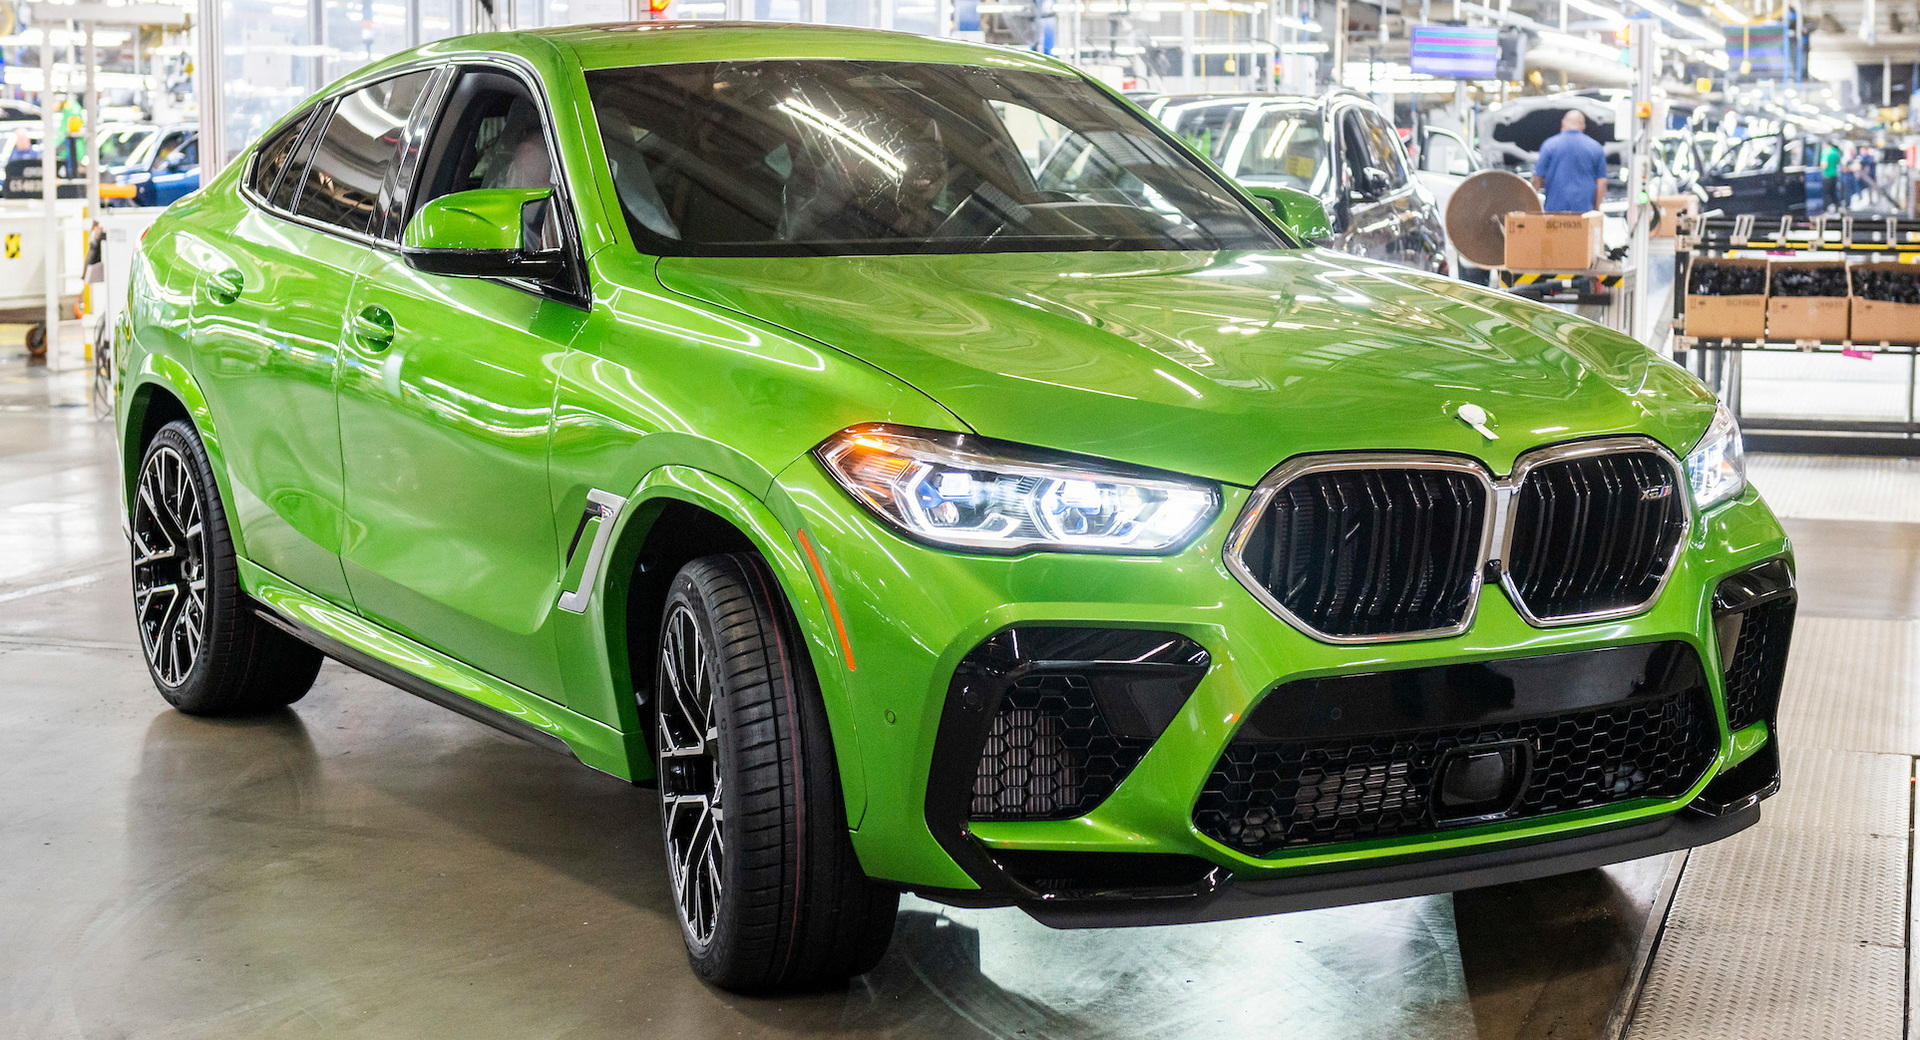 BMW a construit son 6 000 000e véhicule aux États-Unis à l’occasion du 30e anniversaire de l’usine de Spartanburg